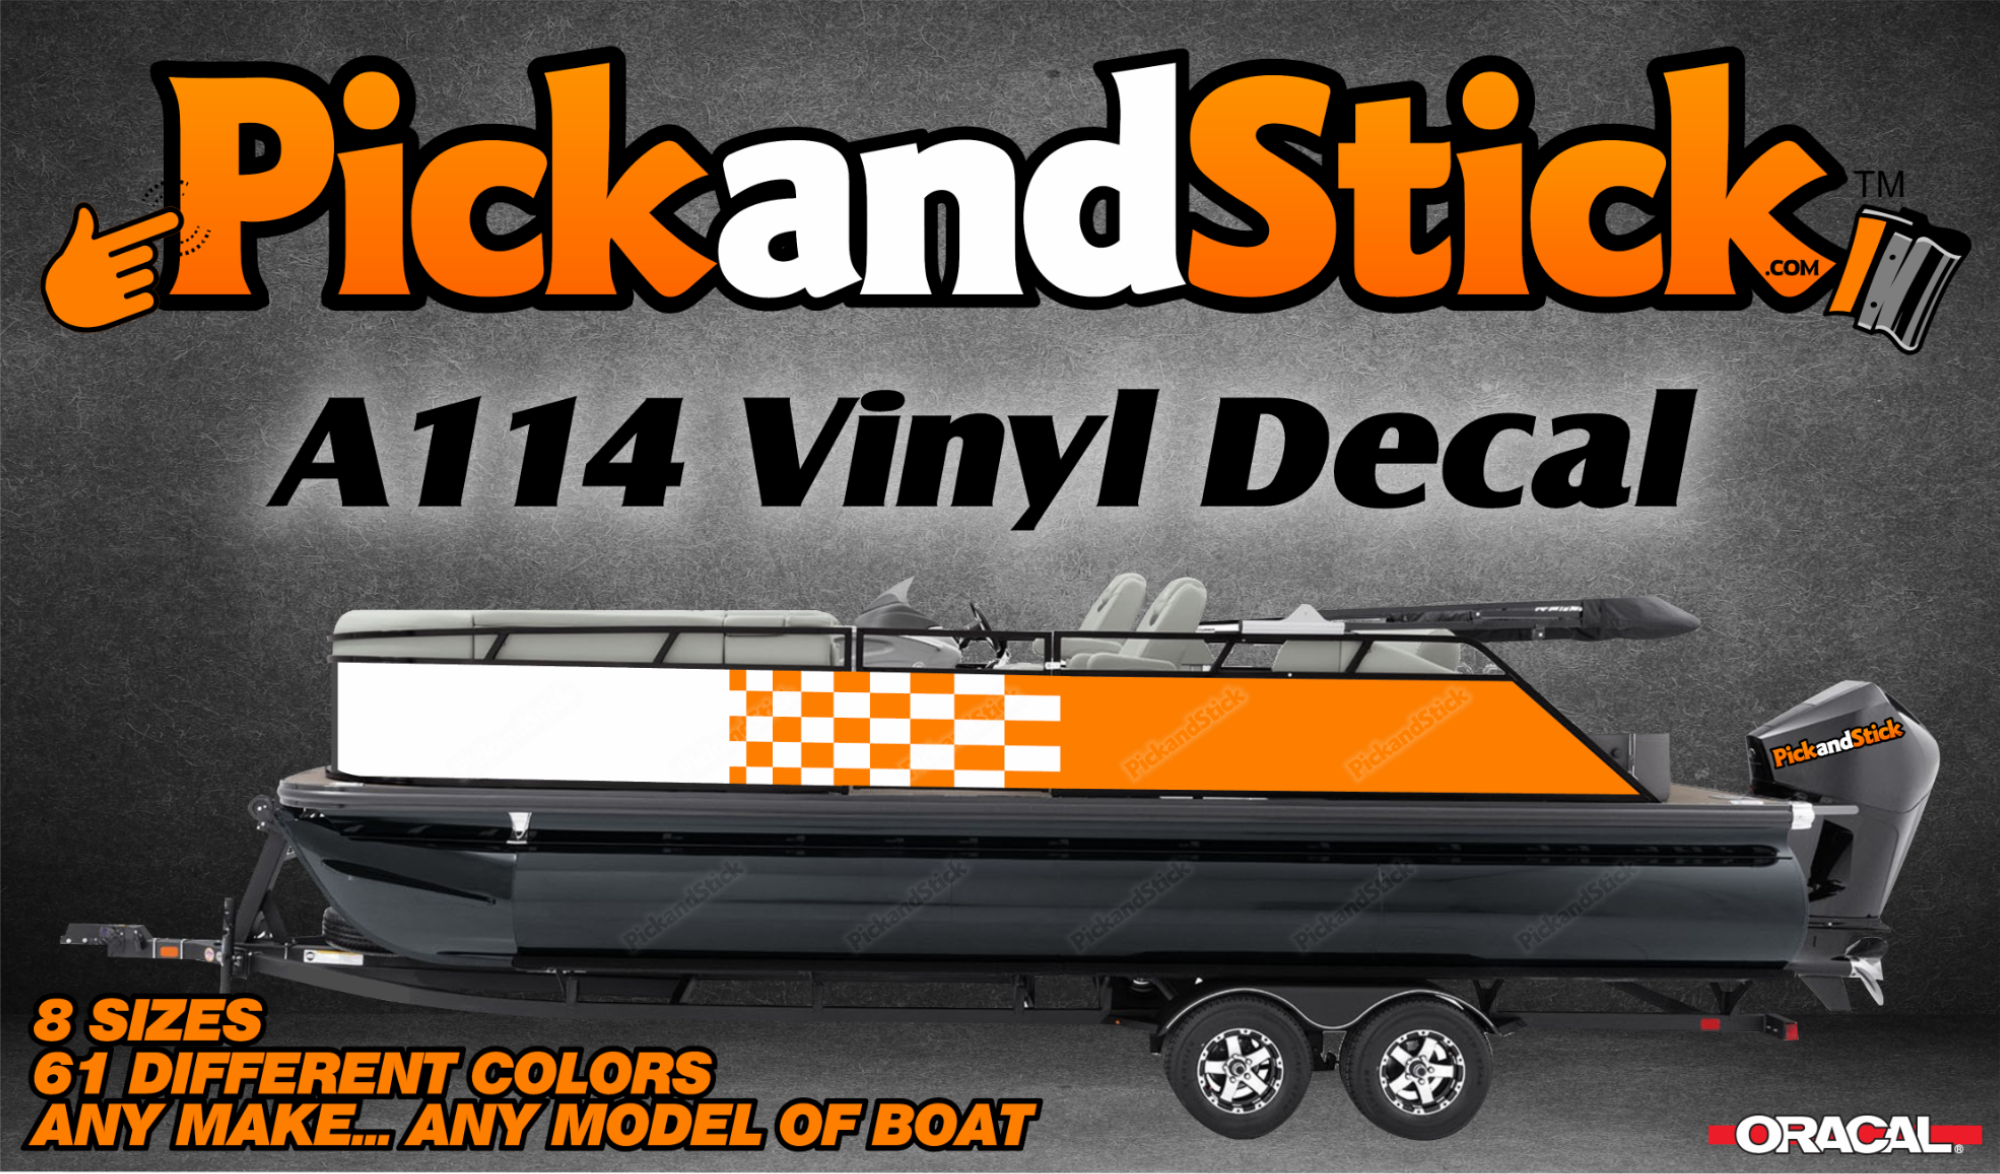 Boat Vinyl Decal A114 - PickandStickcom